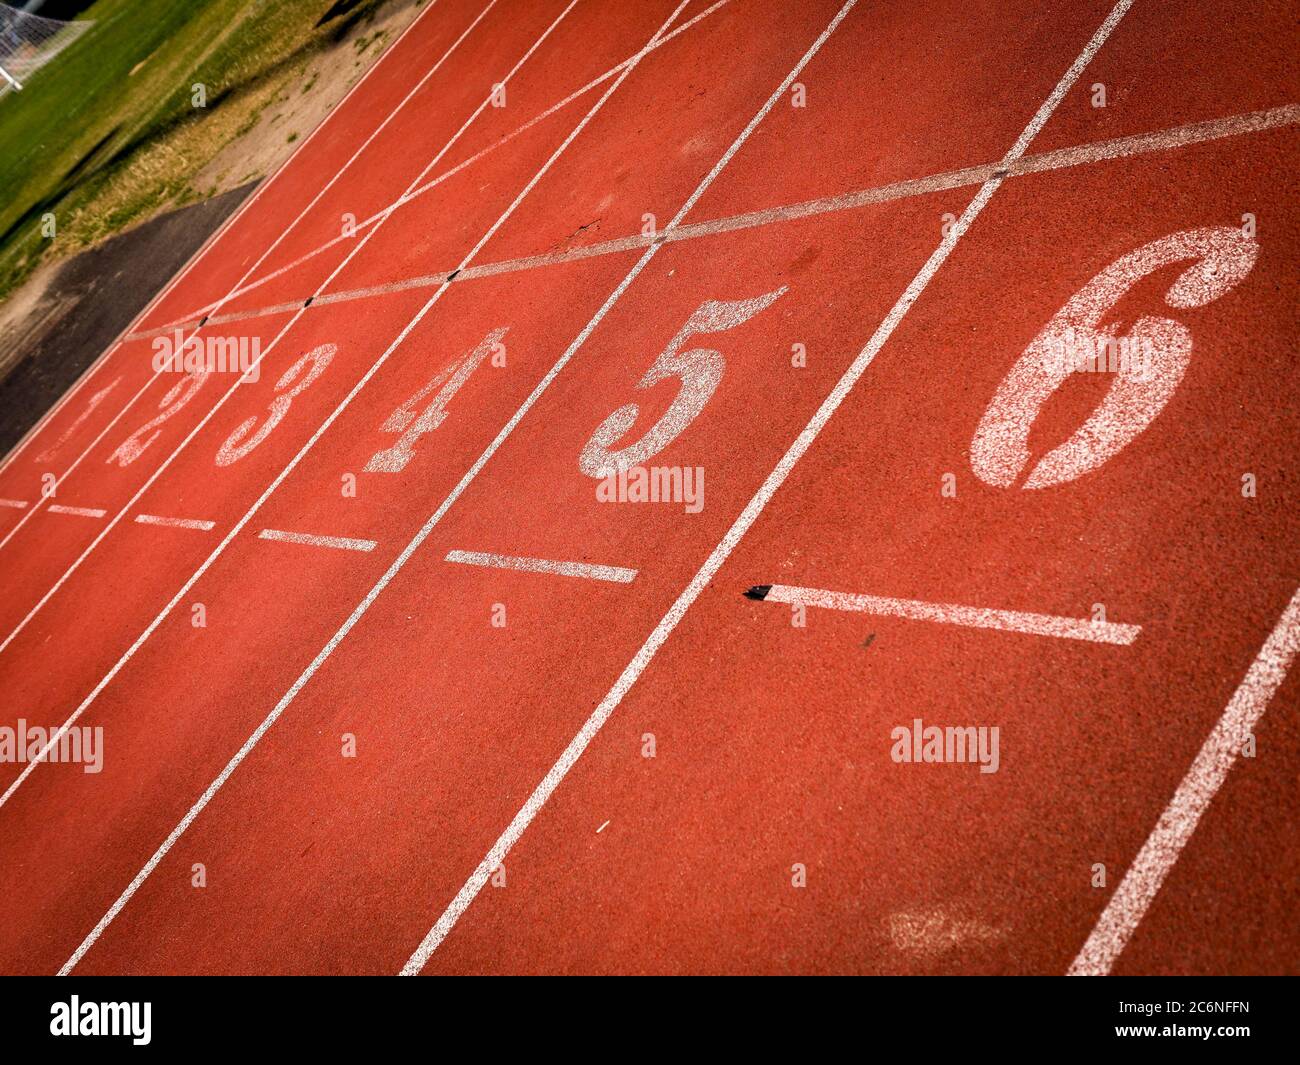 Nummerierte Bahnen auf einer Leichtathletik-Strecke Stockfoto